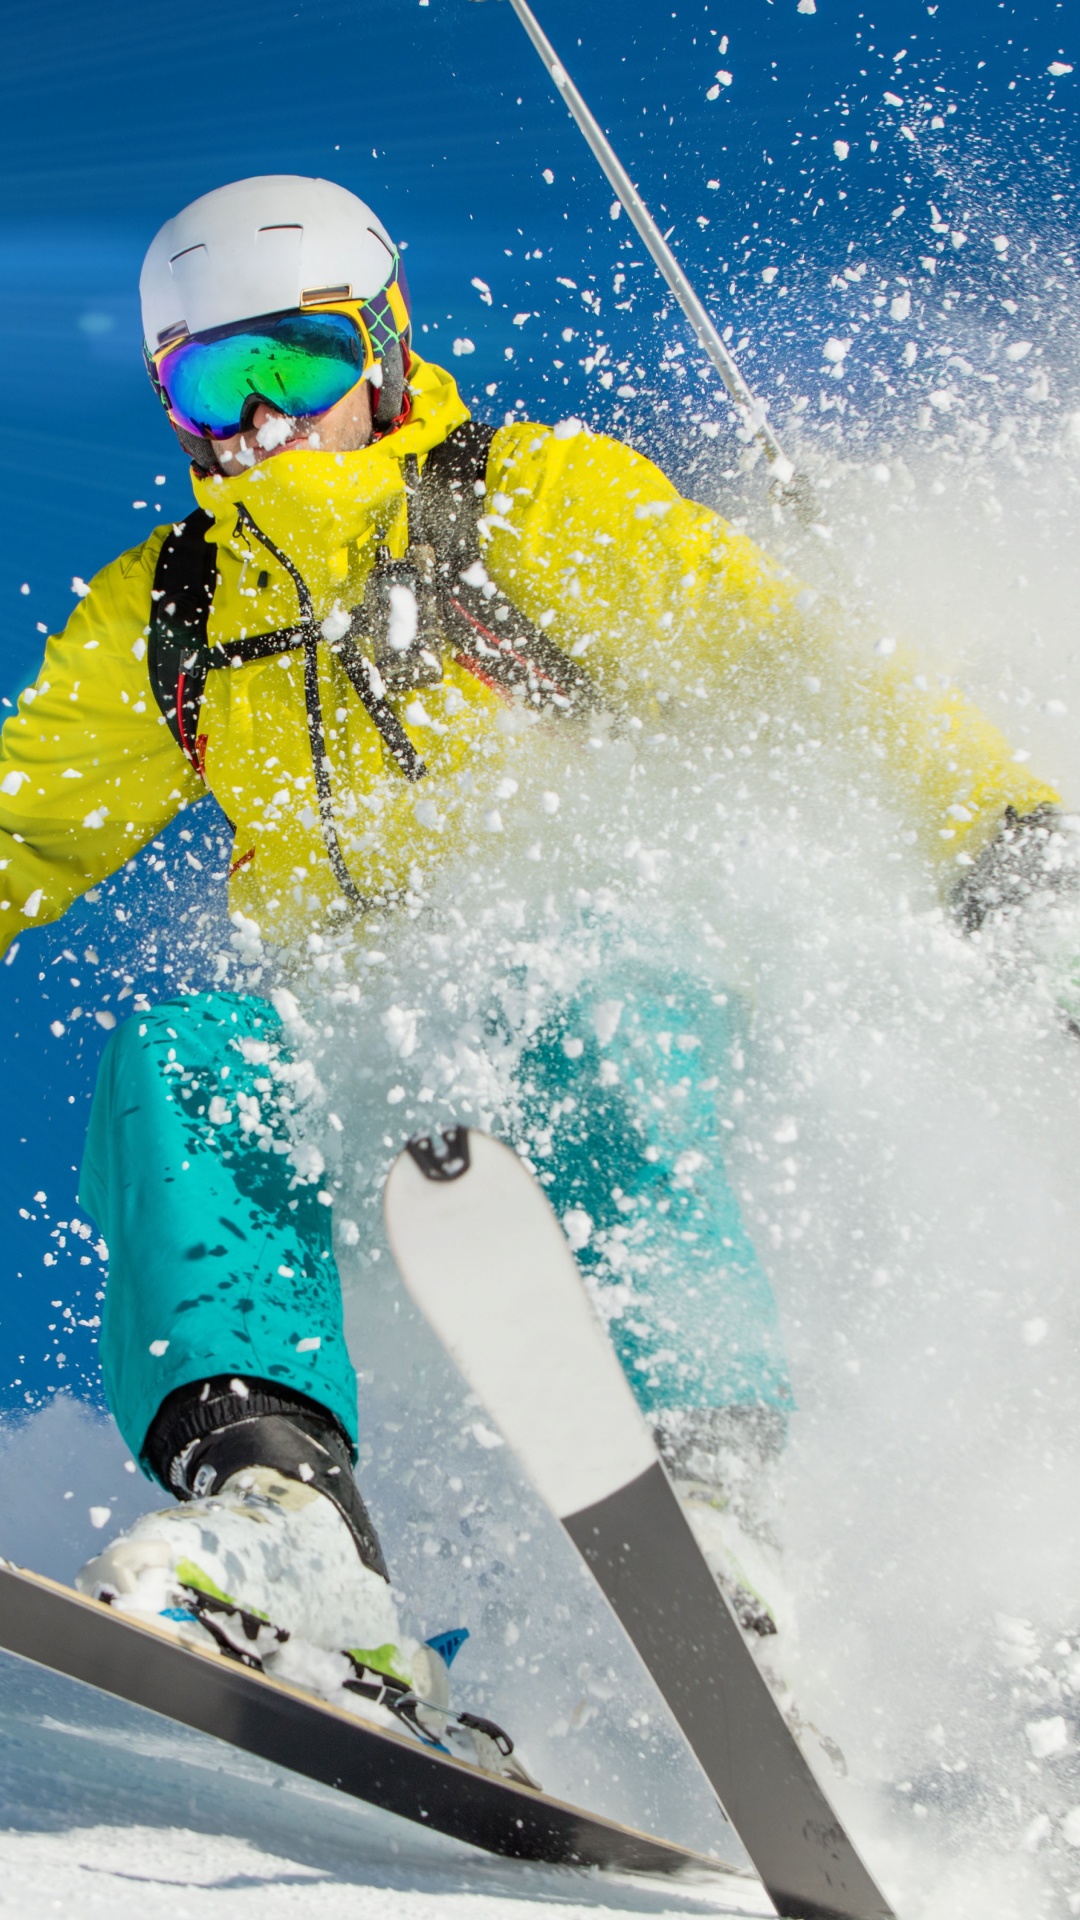 高山滑雪, 滑雪, 极限运动, 自由式滑雪, 滑板滑雪 壁纸 1080x1920 允许